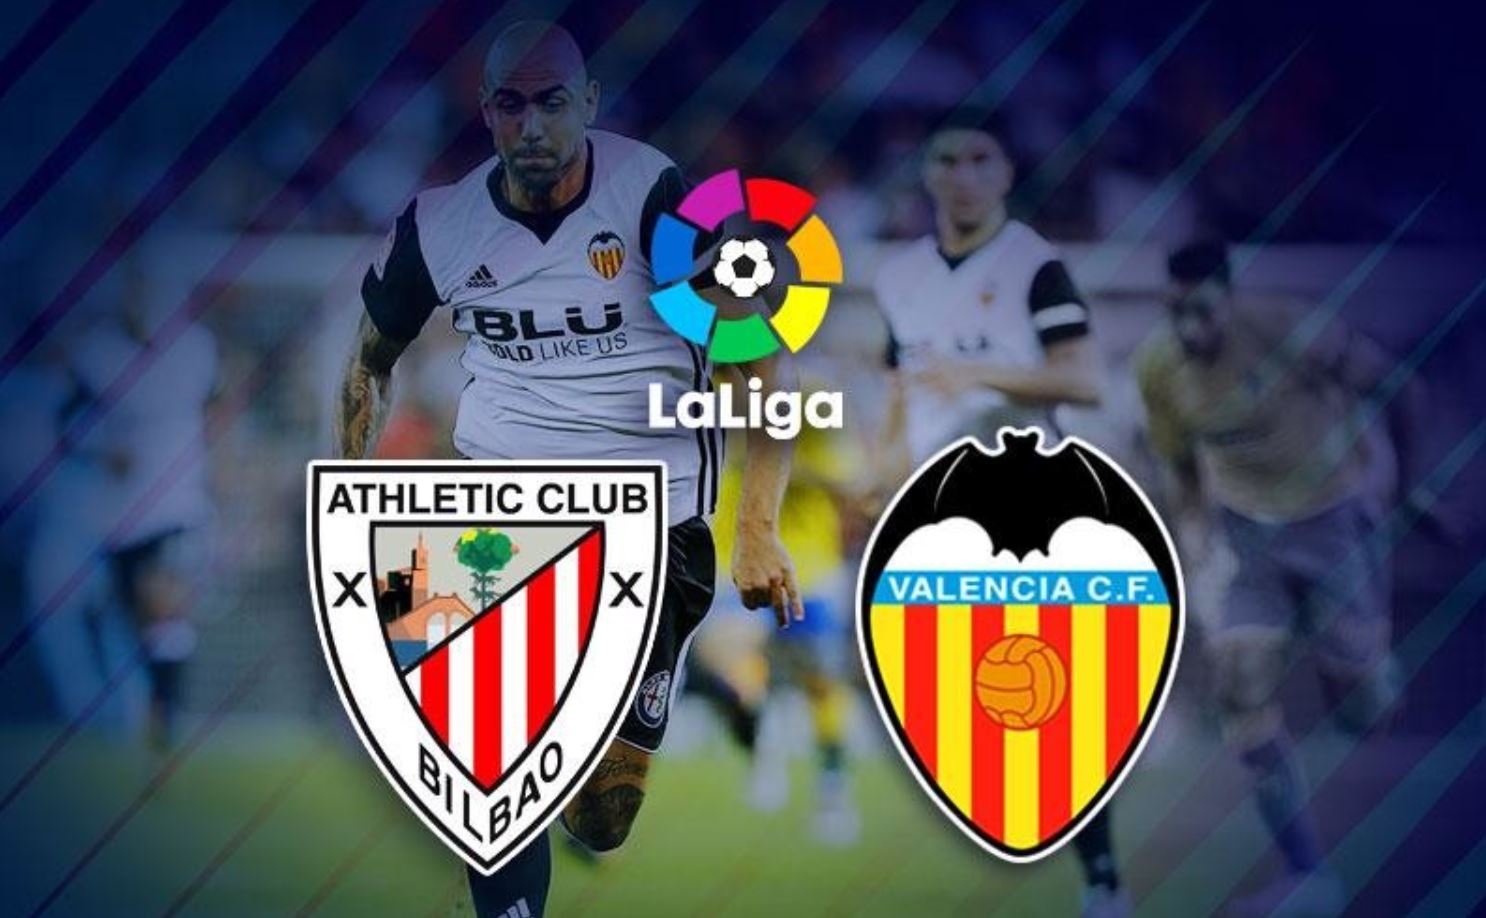 Nhận định Valencia và Athletic Bilbao tại Vòng 7 giải La Liga 2021/22